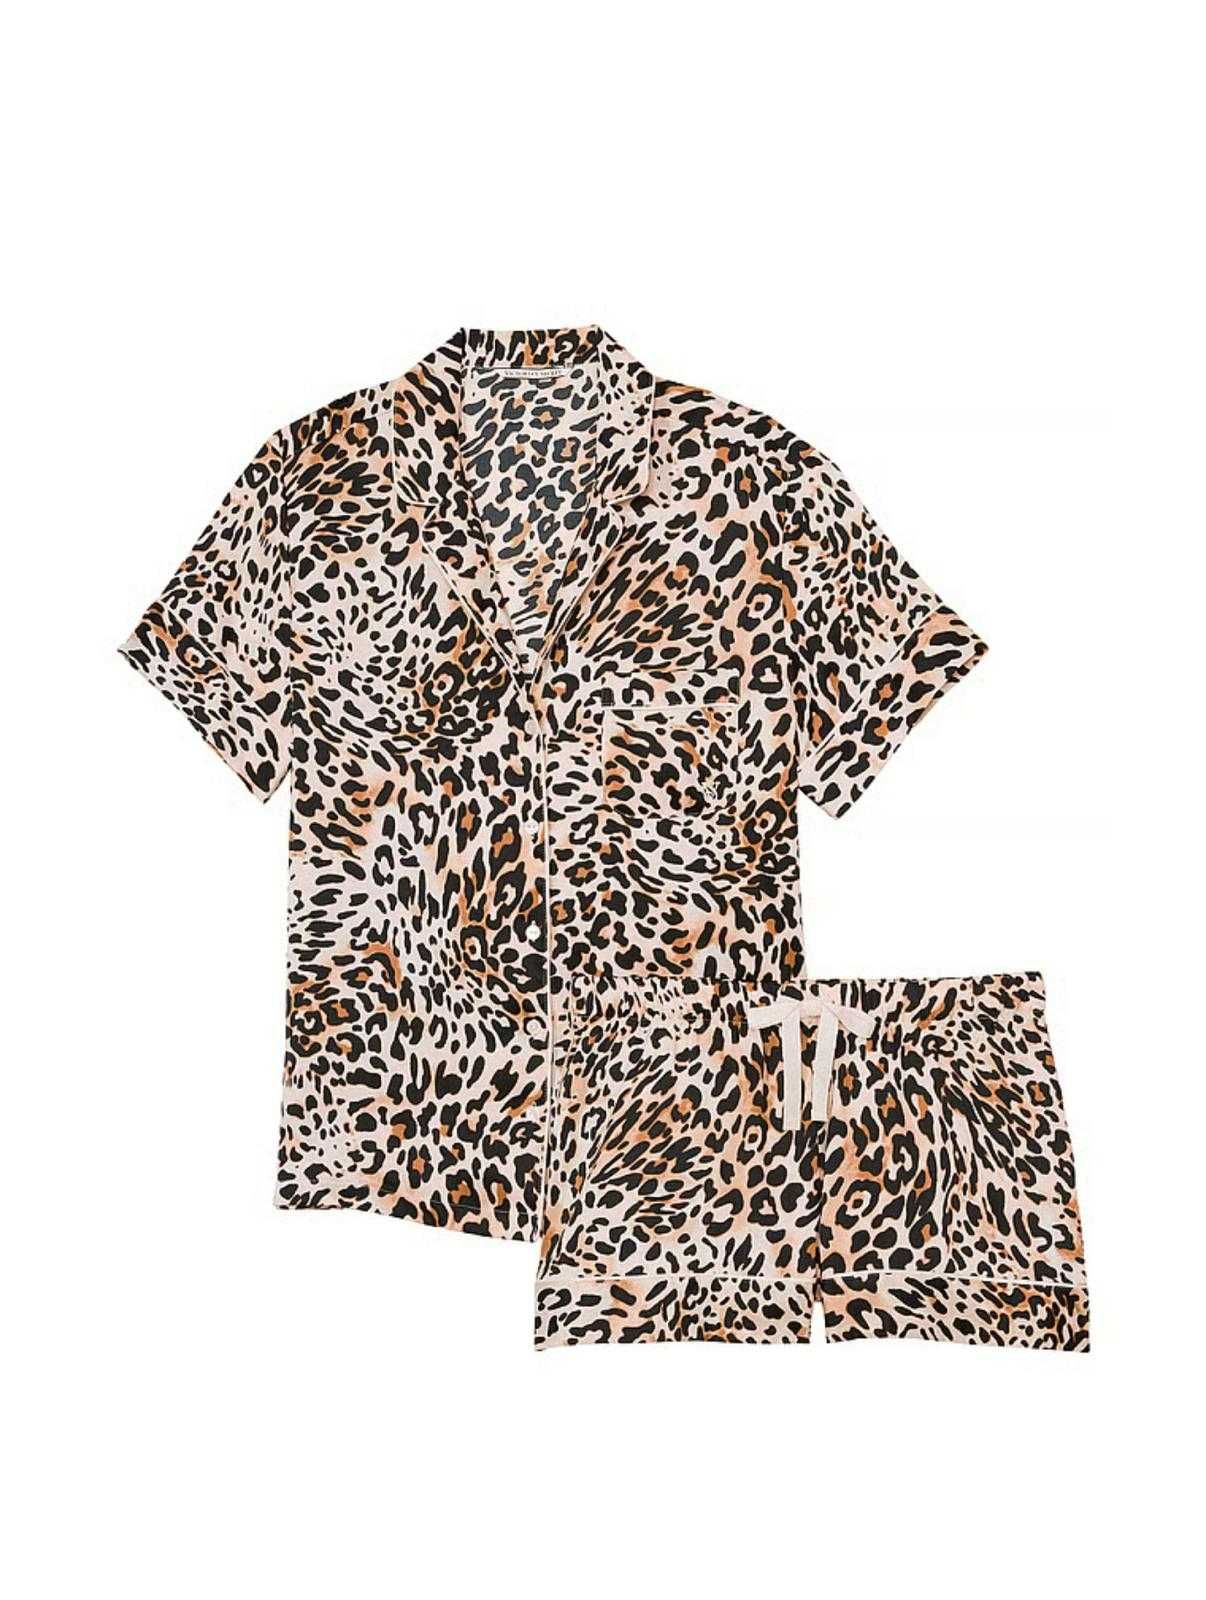 Victoria's Secret - Set Pijama scurta. Imprimeu Leopard sau Floral.